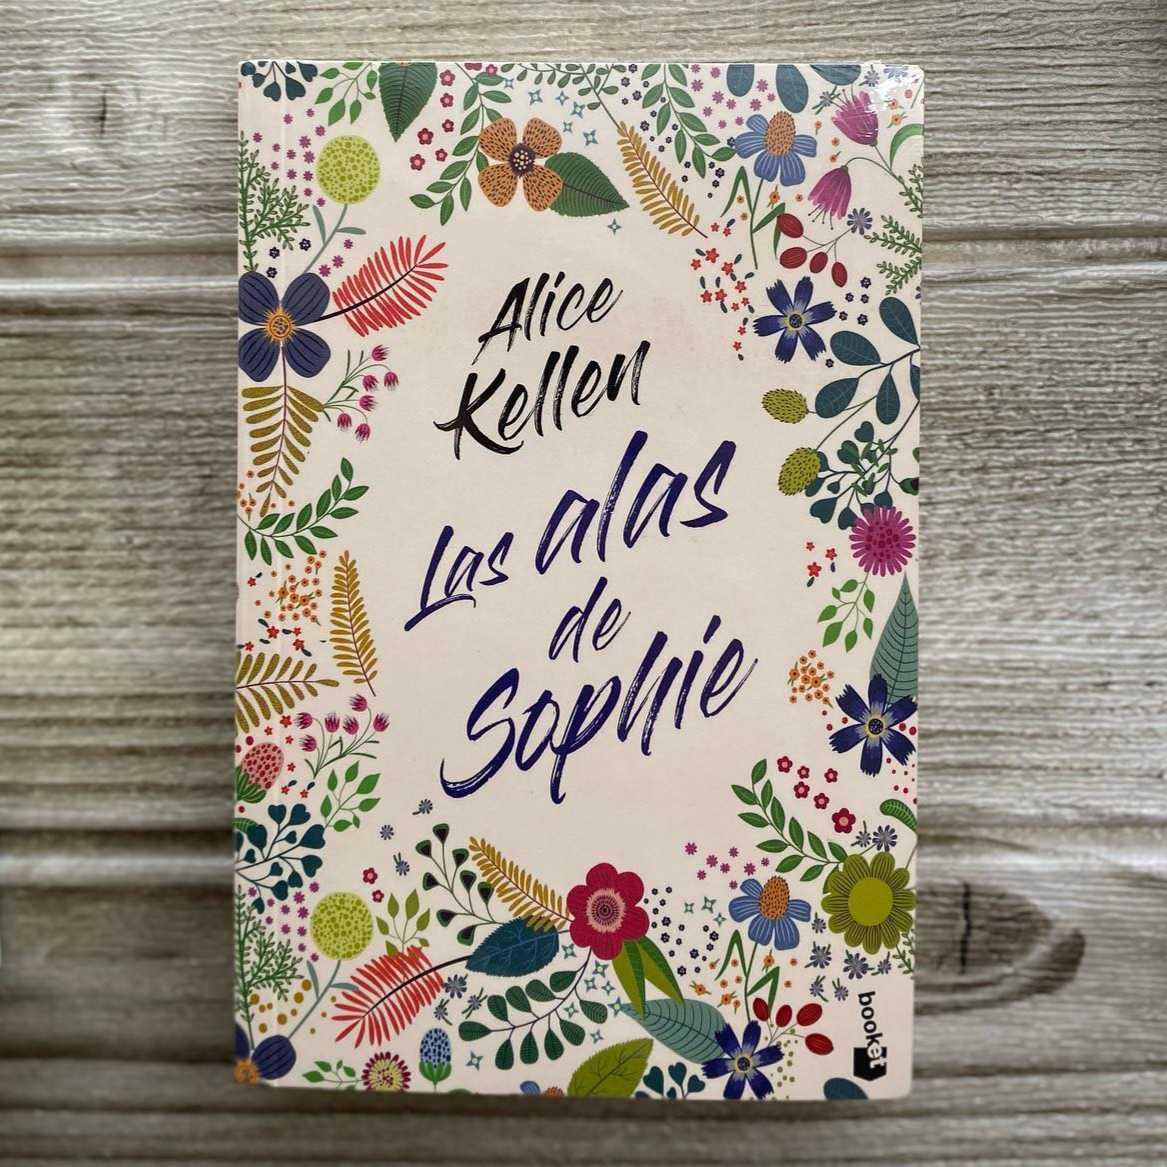 Once Upon a Book: Reseña  Las Alas de Sophie - Alice Kellen